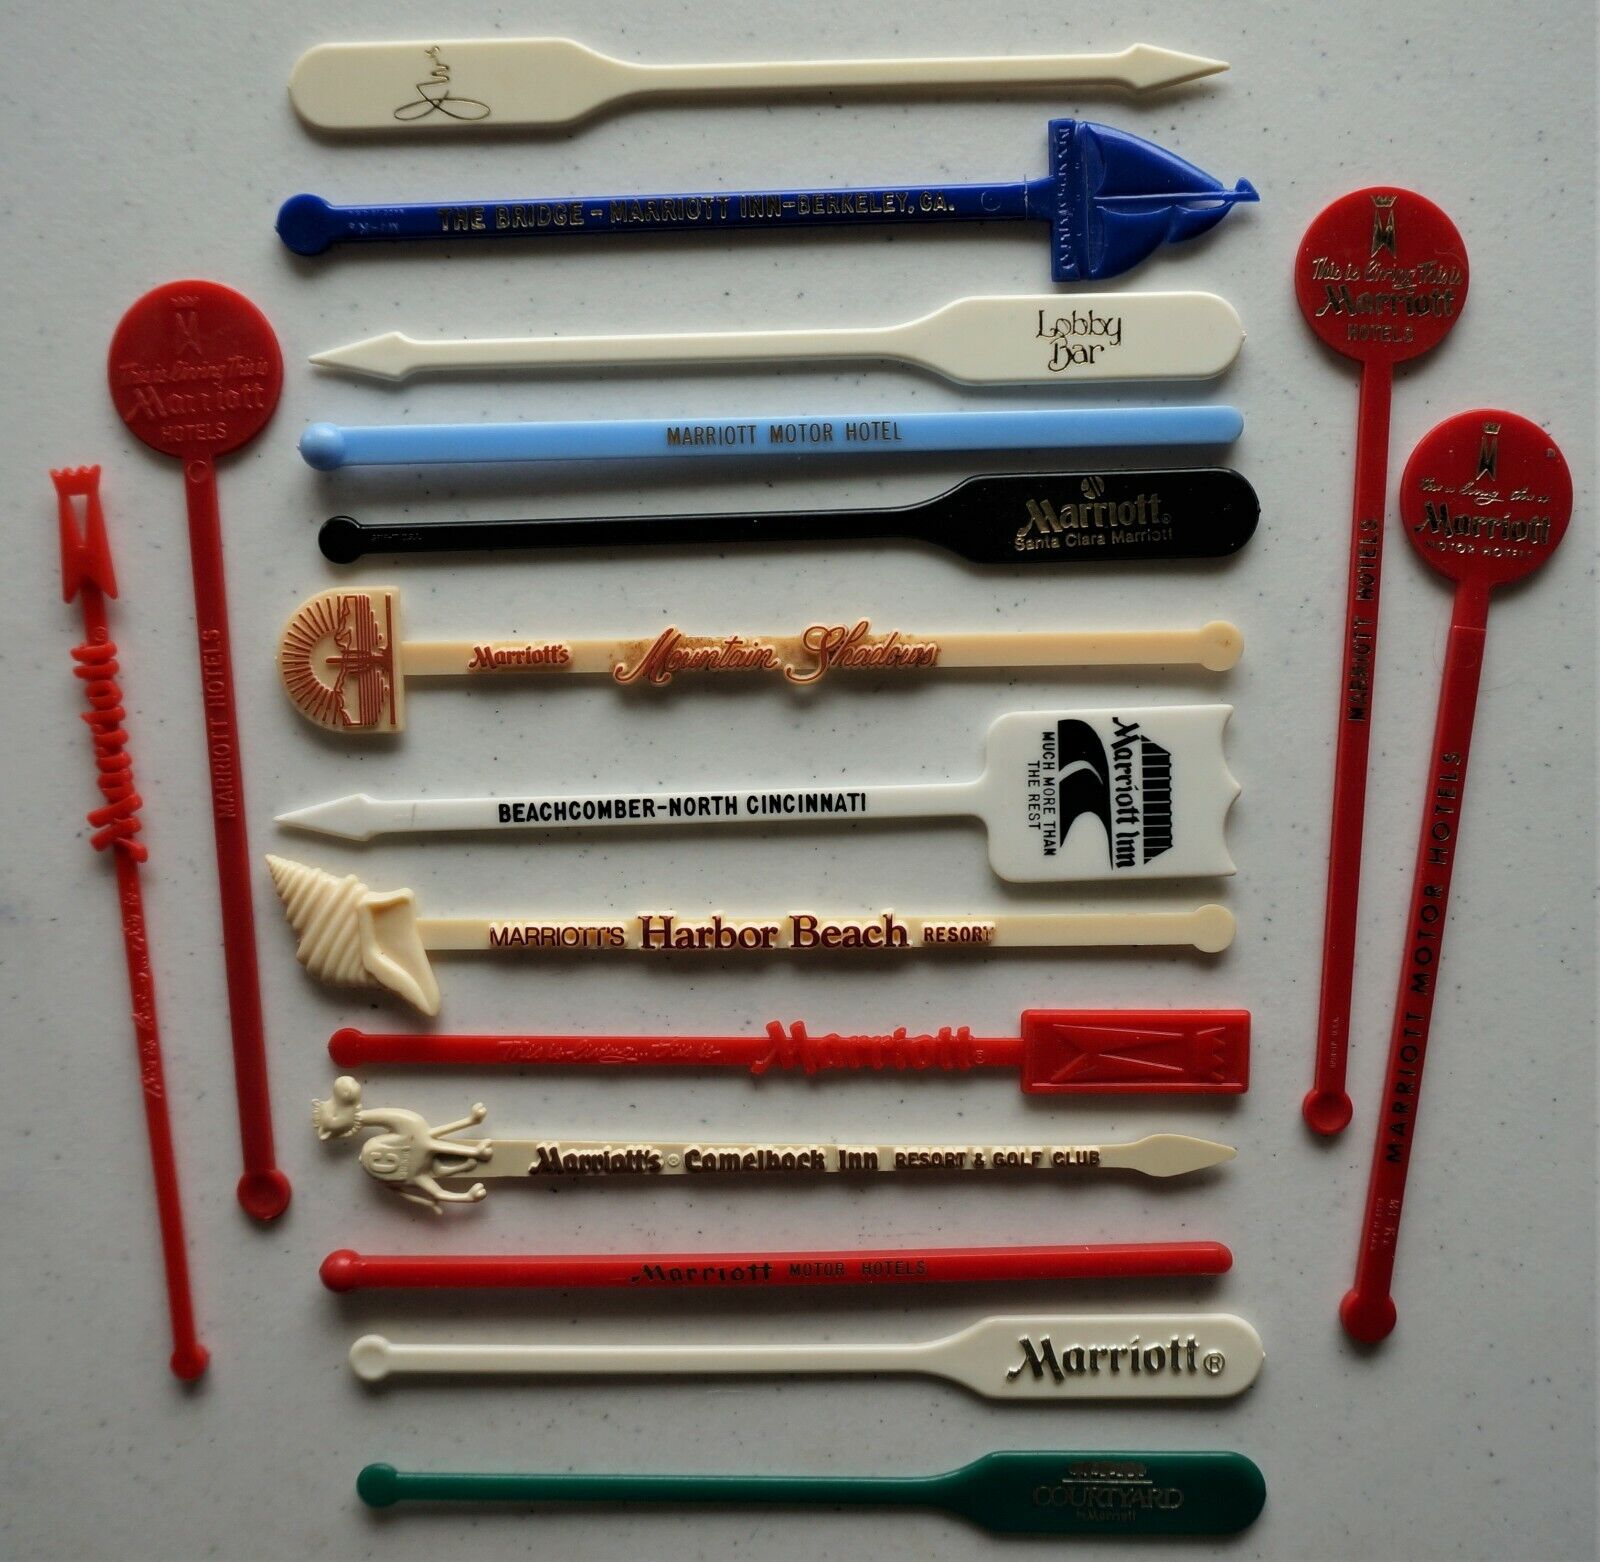 17 vintage Marriott swizzle/stir sticks, all different Без бренда